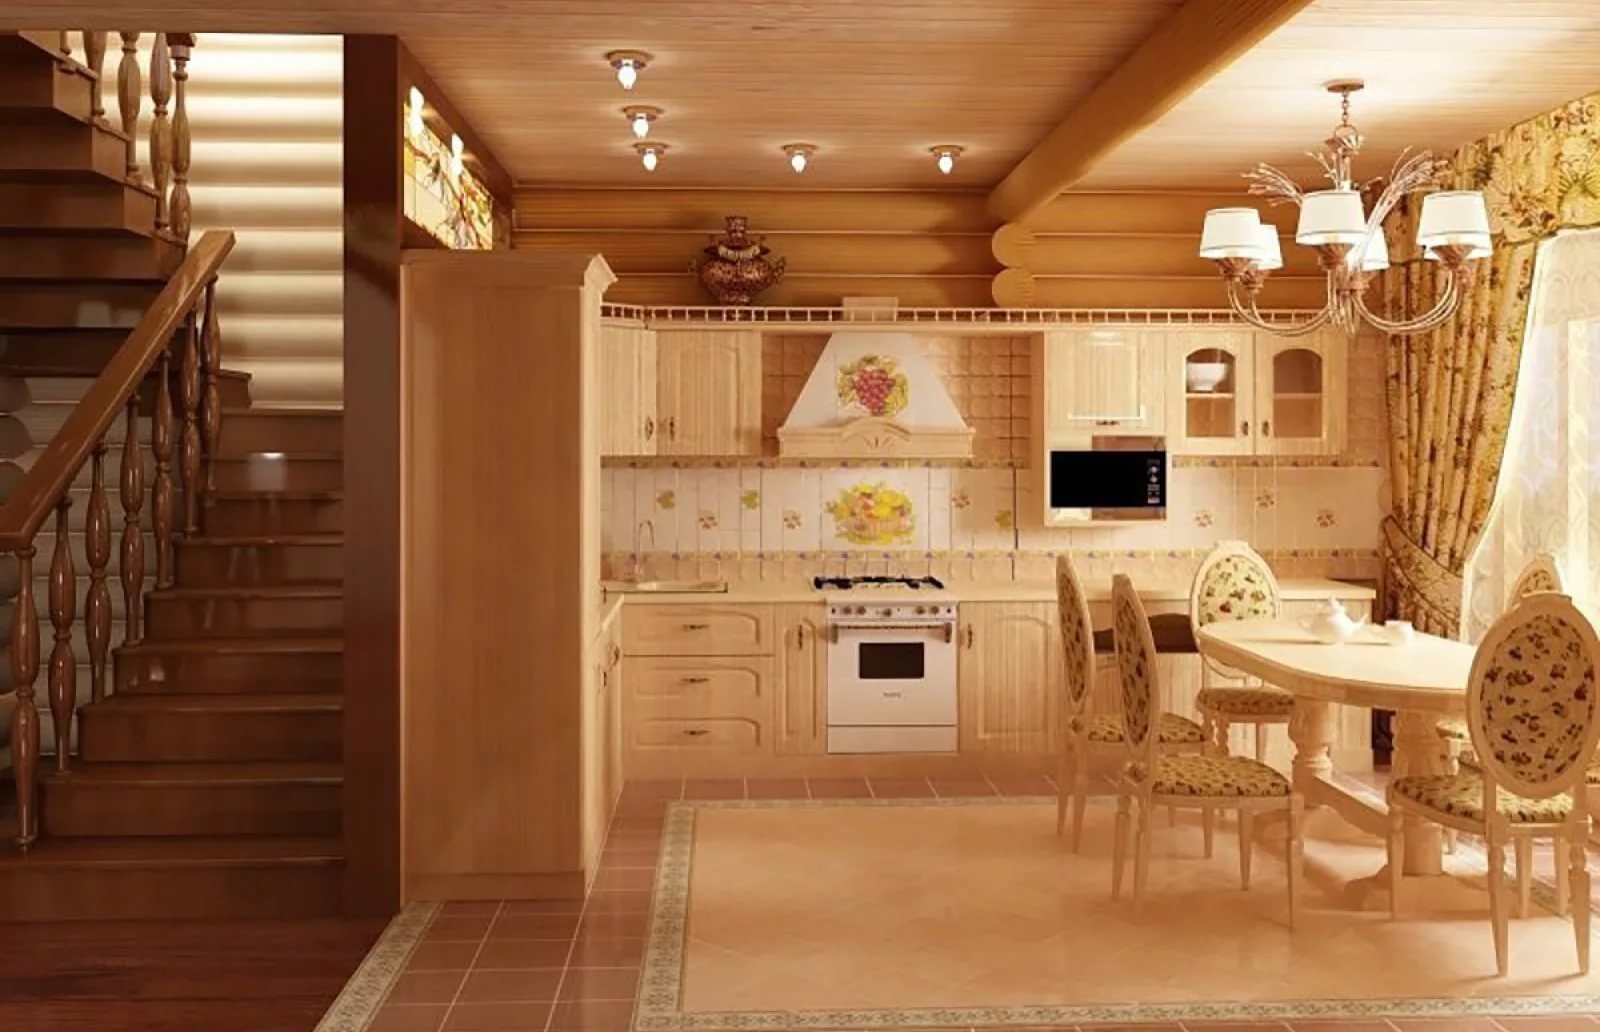 20 вариантов дизайна кухни в деревянном доме. Интересные решения